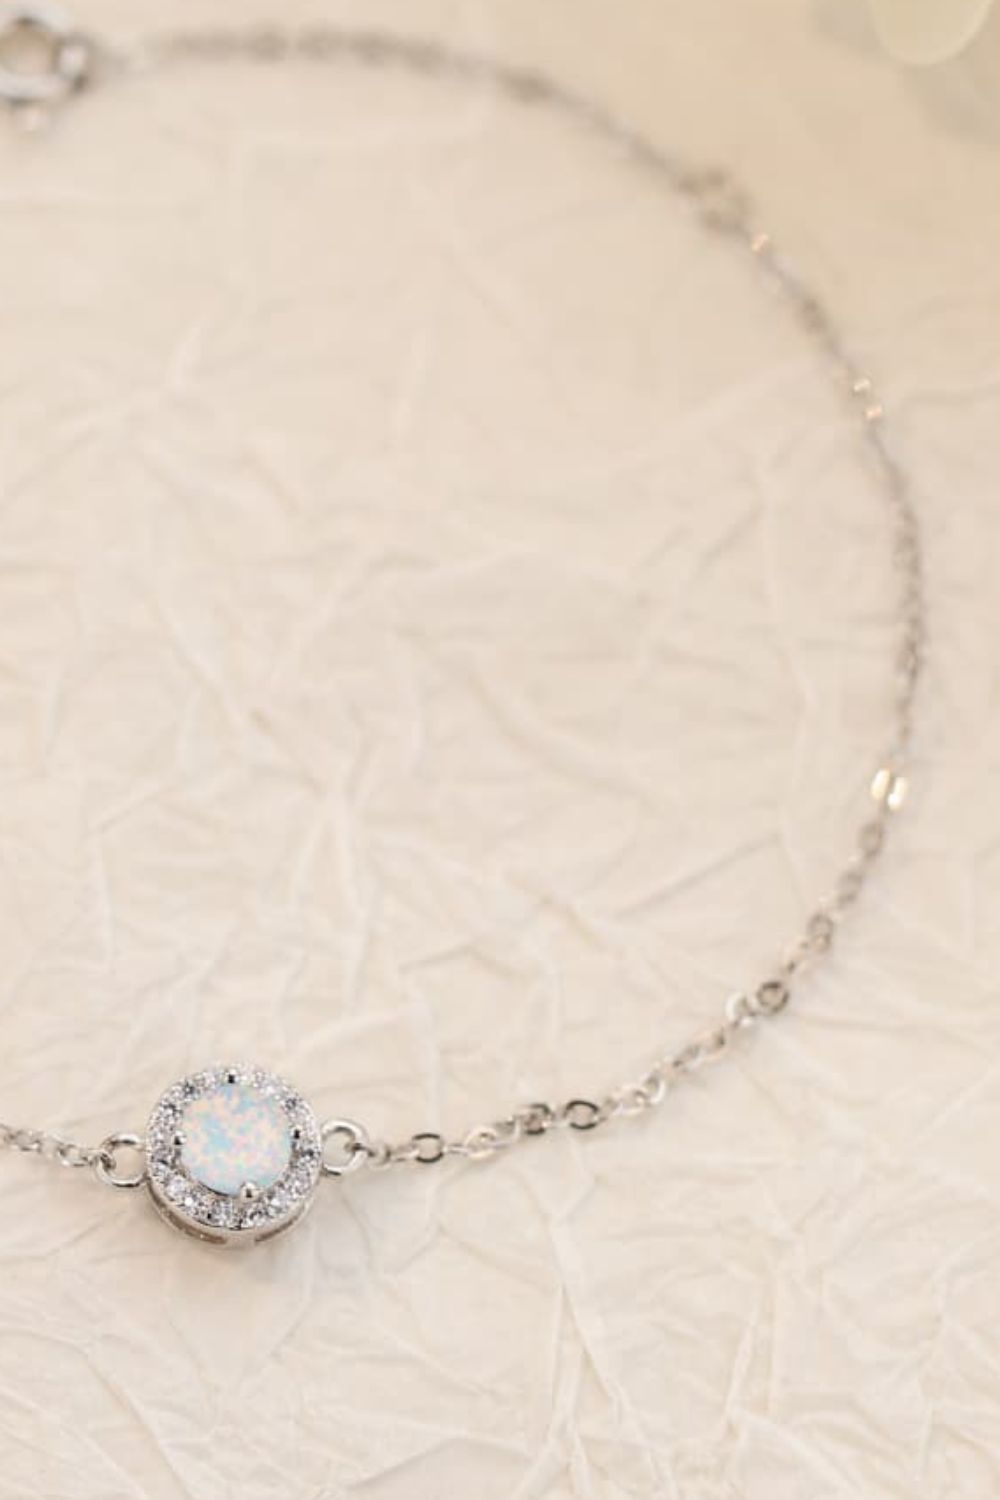 Love You Too Much Opal Bracelet - Women’s Jewelry - Bracelets - 7 - 2024